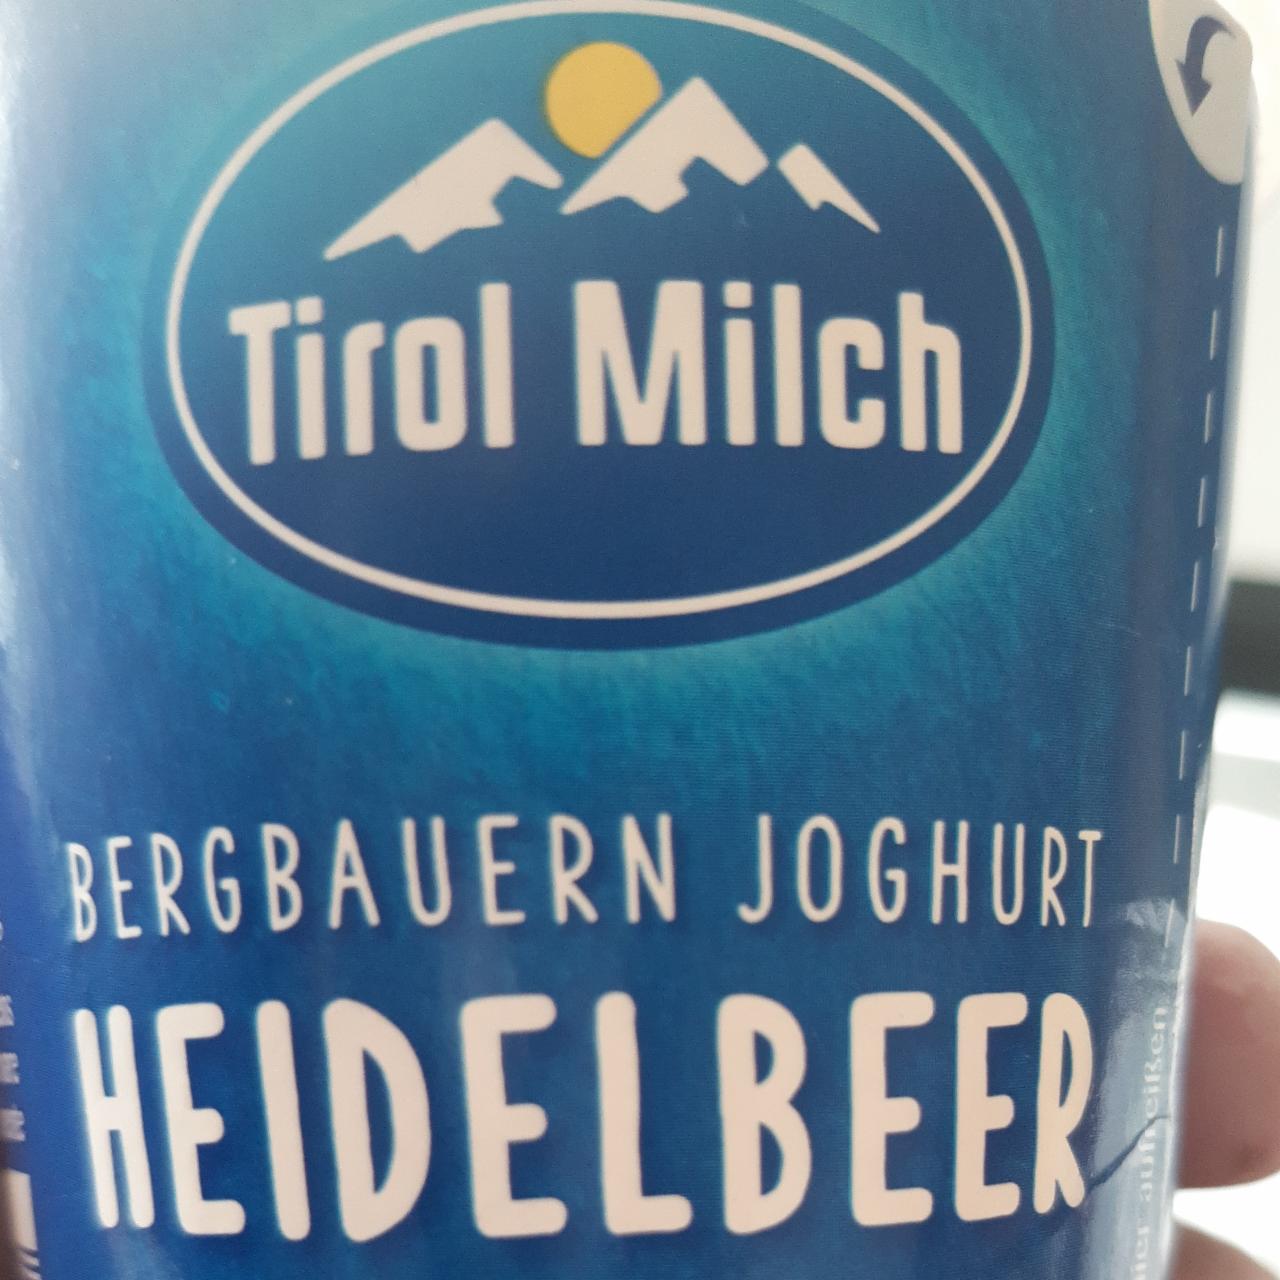 Fotografie - Bergbauern joghurt Heidelbeer Tirol Milch